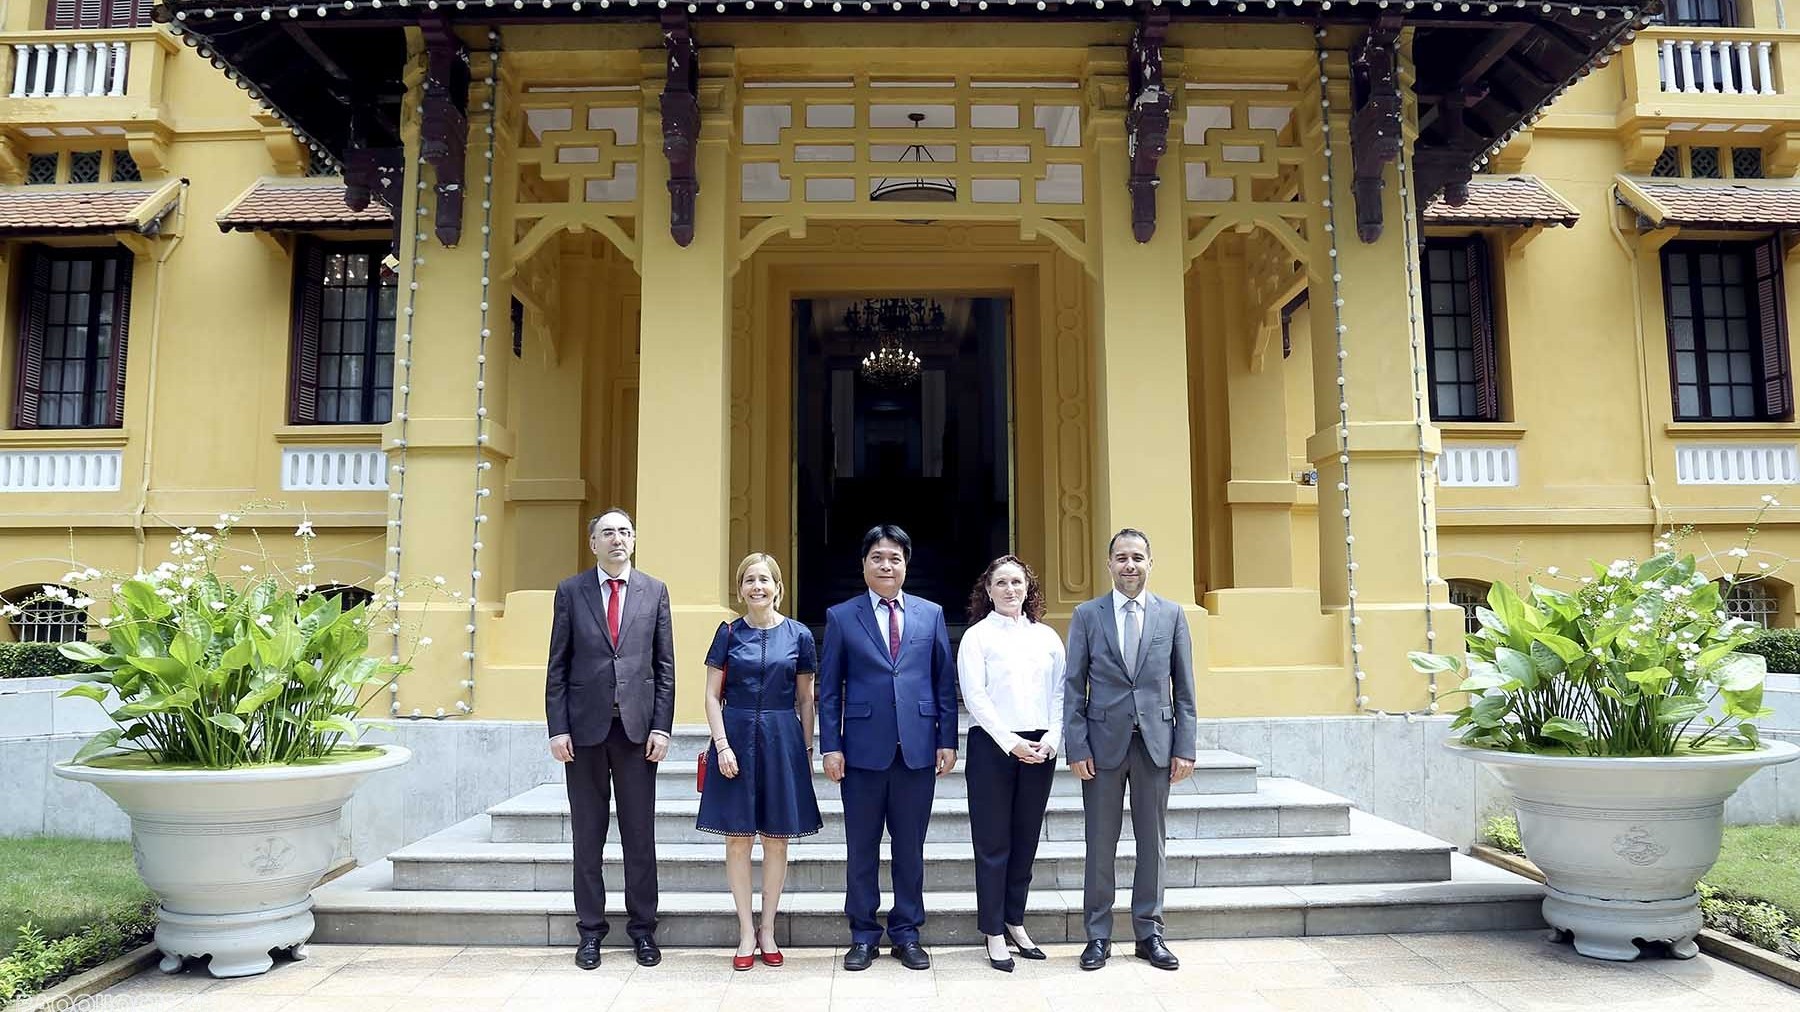 Cục trưởng Cục Lễ tân Nhà nước tiếp nhận bản sao Thư ủy nhiệm bổ nhiệm Đại sứ Peru tại Việt Nam